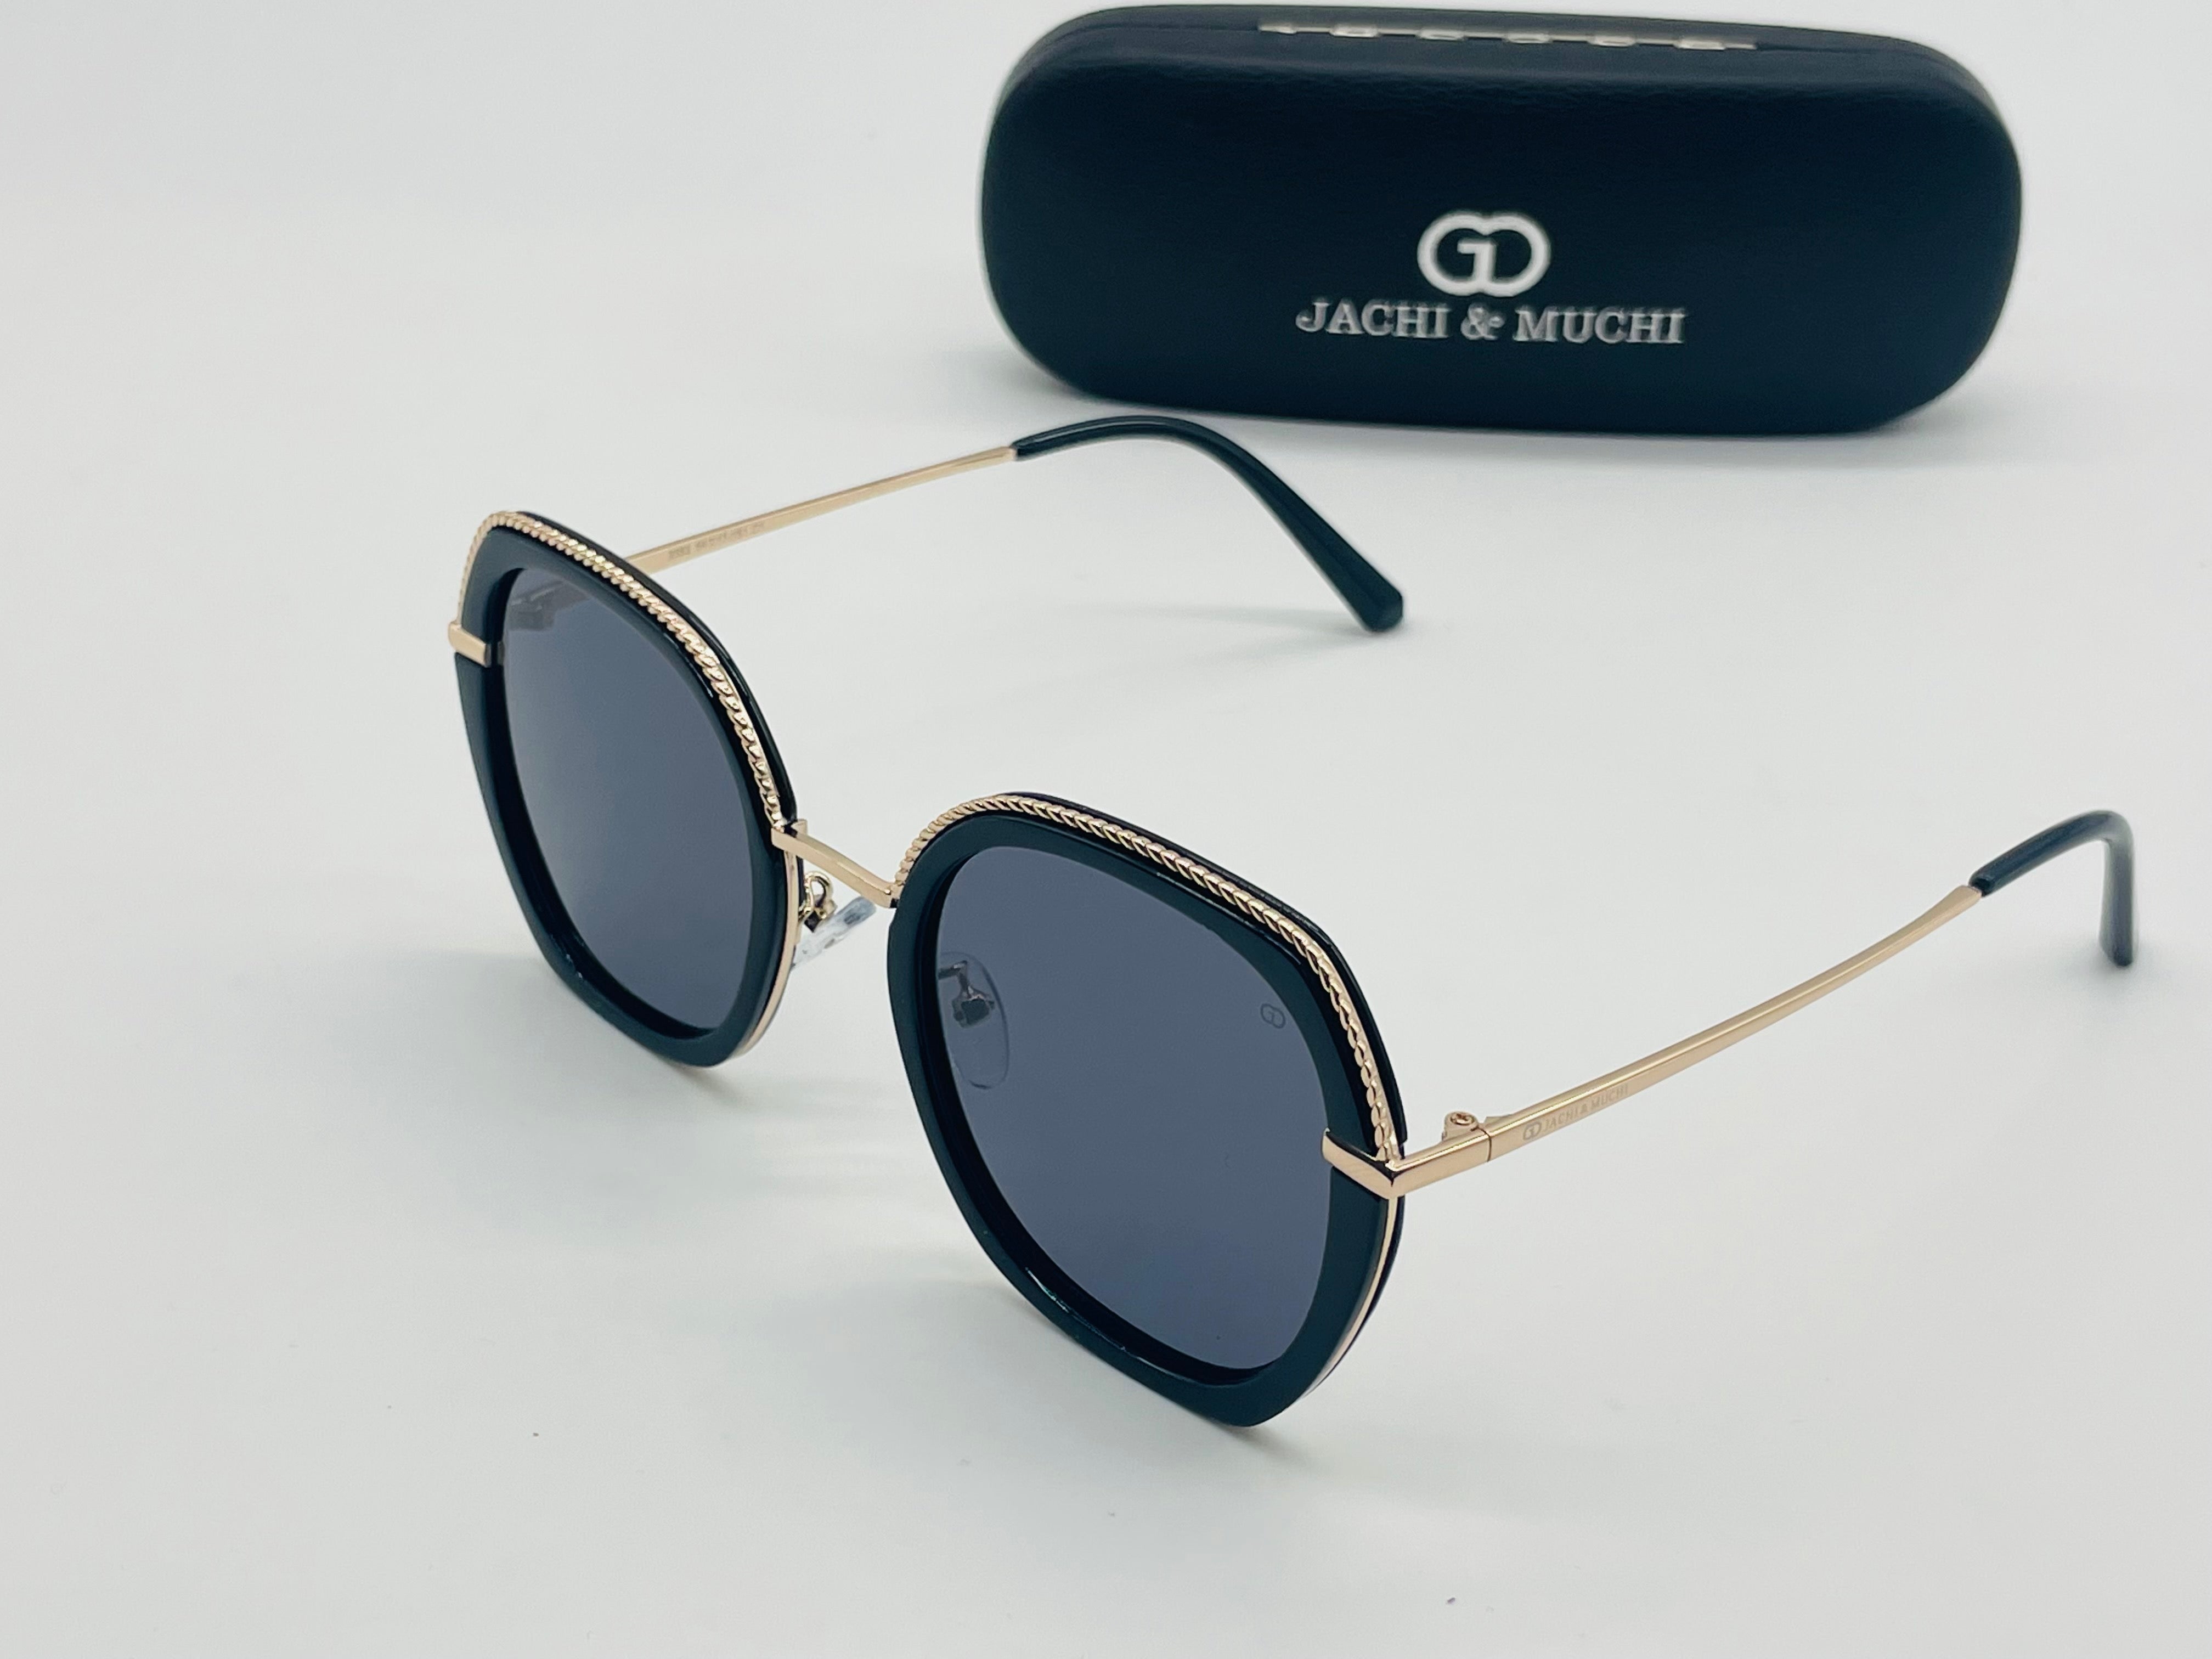 Retro Squre HD Polarized UV400 Sunglasses